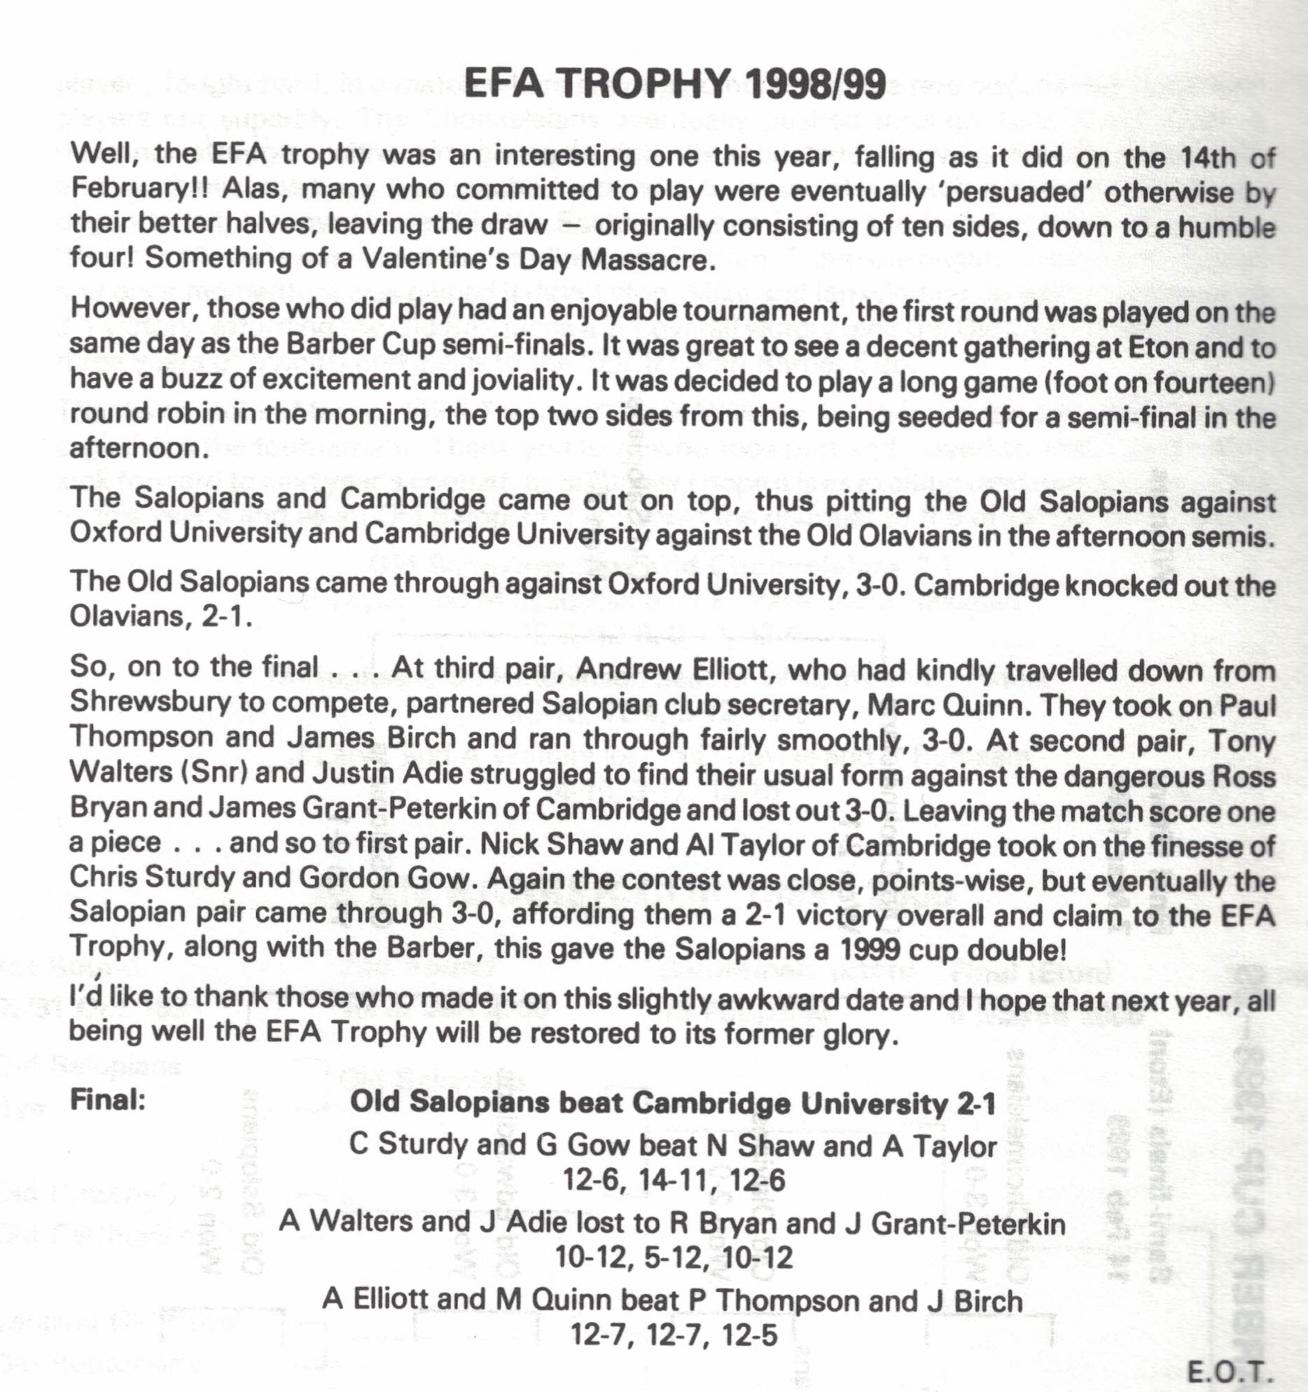 efa trophy 1999